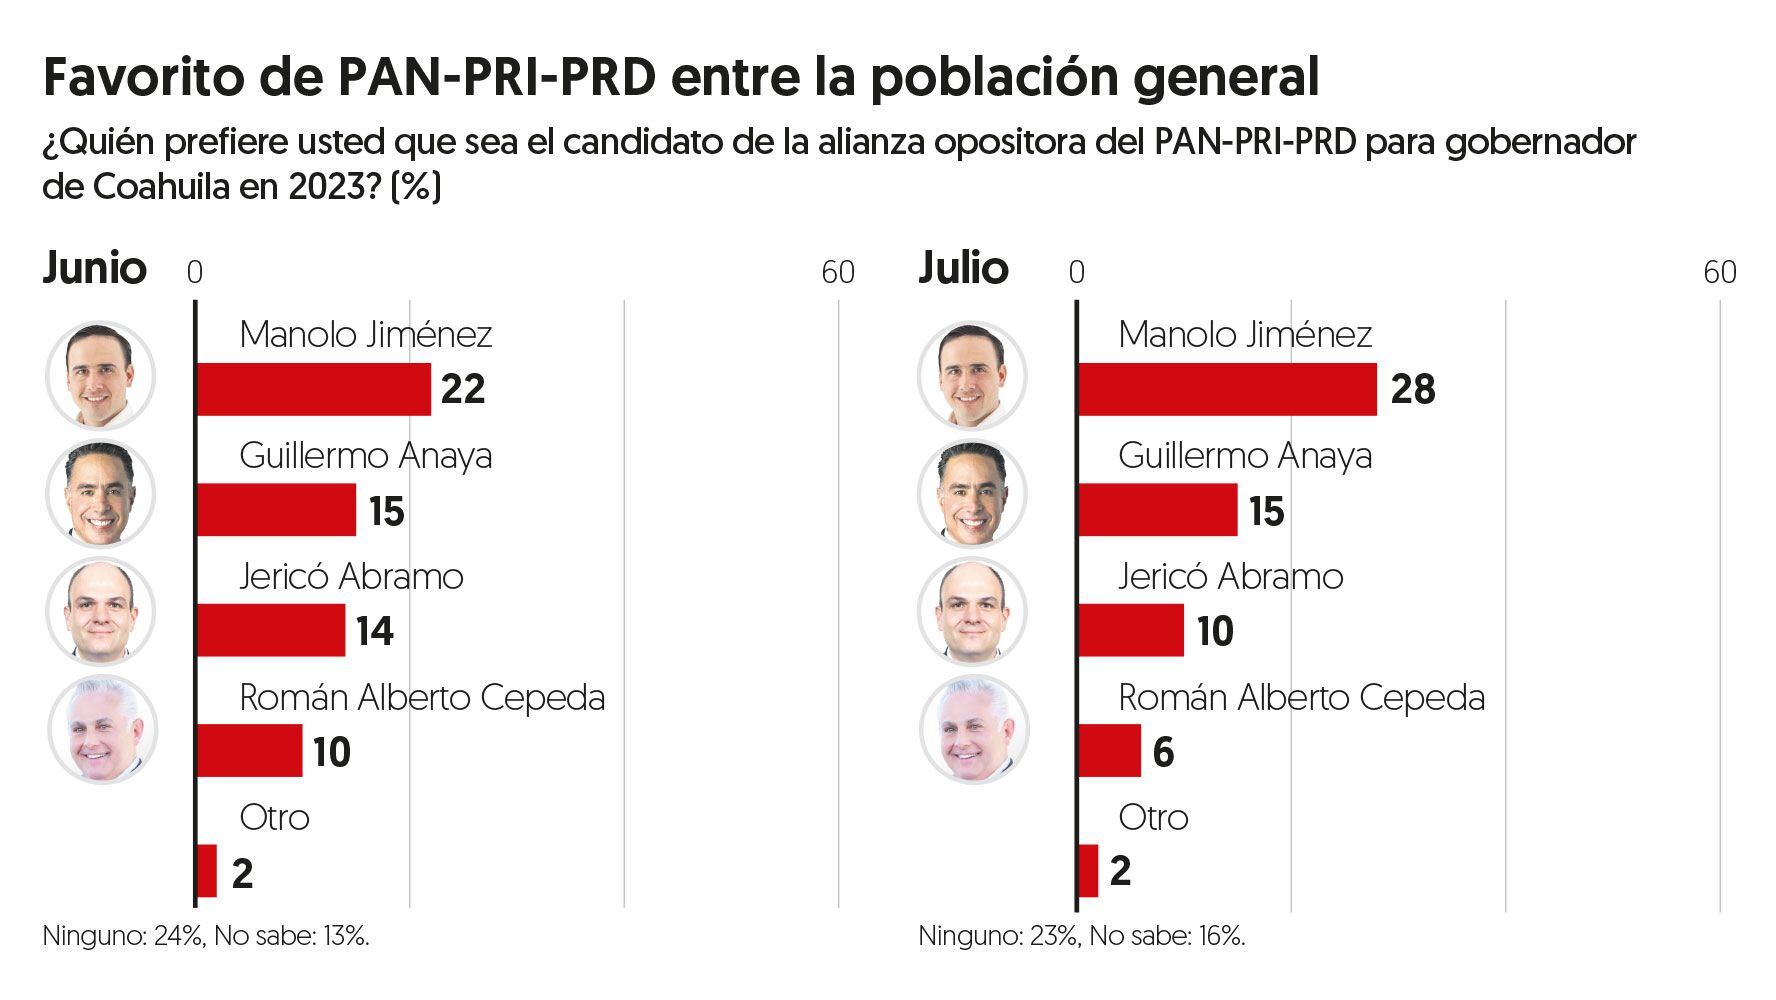 Entre la población en general, Manolo Jiménez es el favorito de la alianza PAN-PRI-PRD